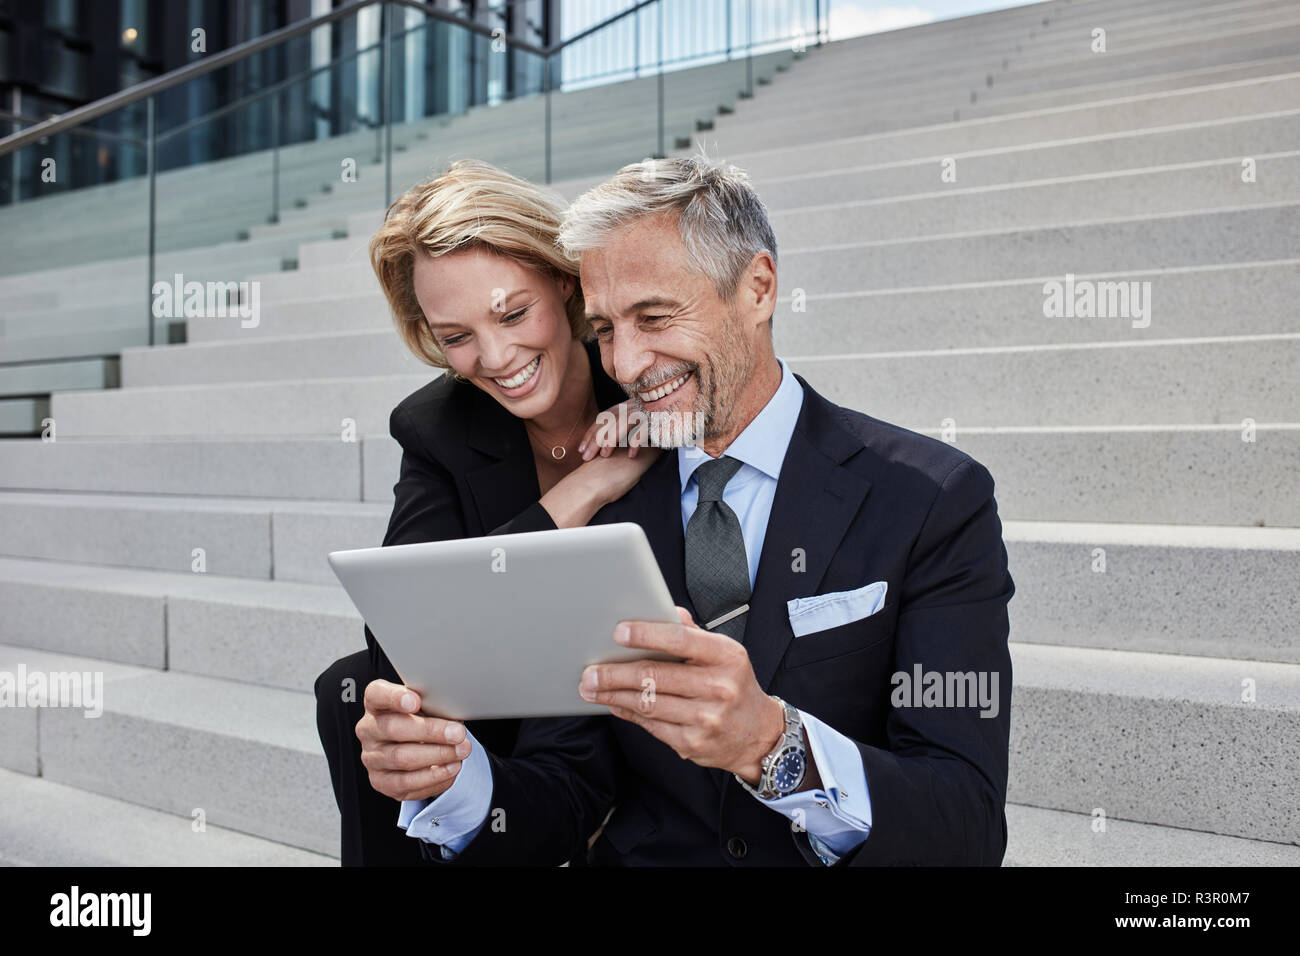 Ritratto di due imprenditori ridere seduti insieme su scale guardando tablet Foto Stock